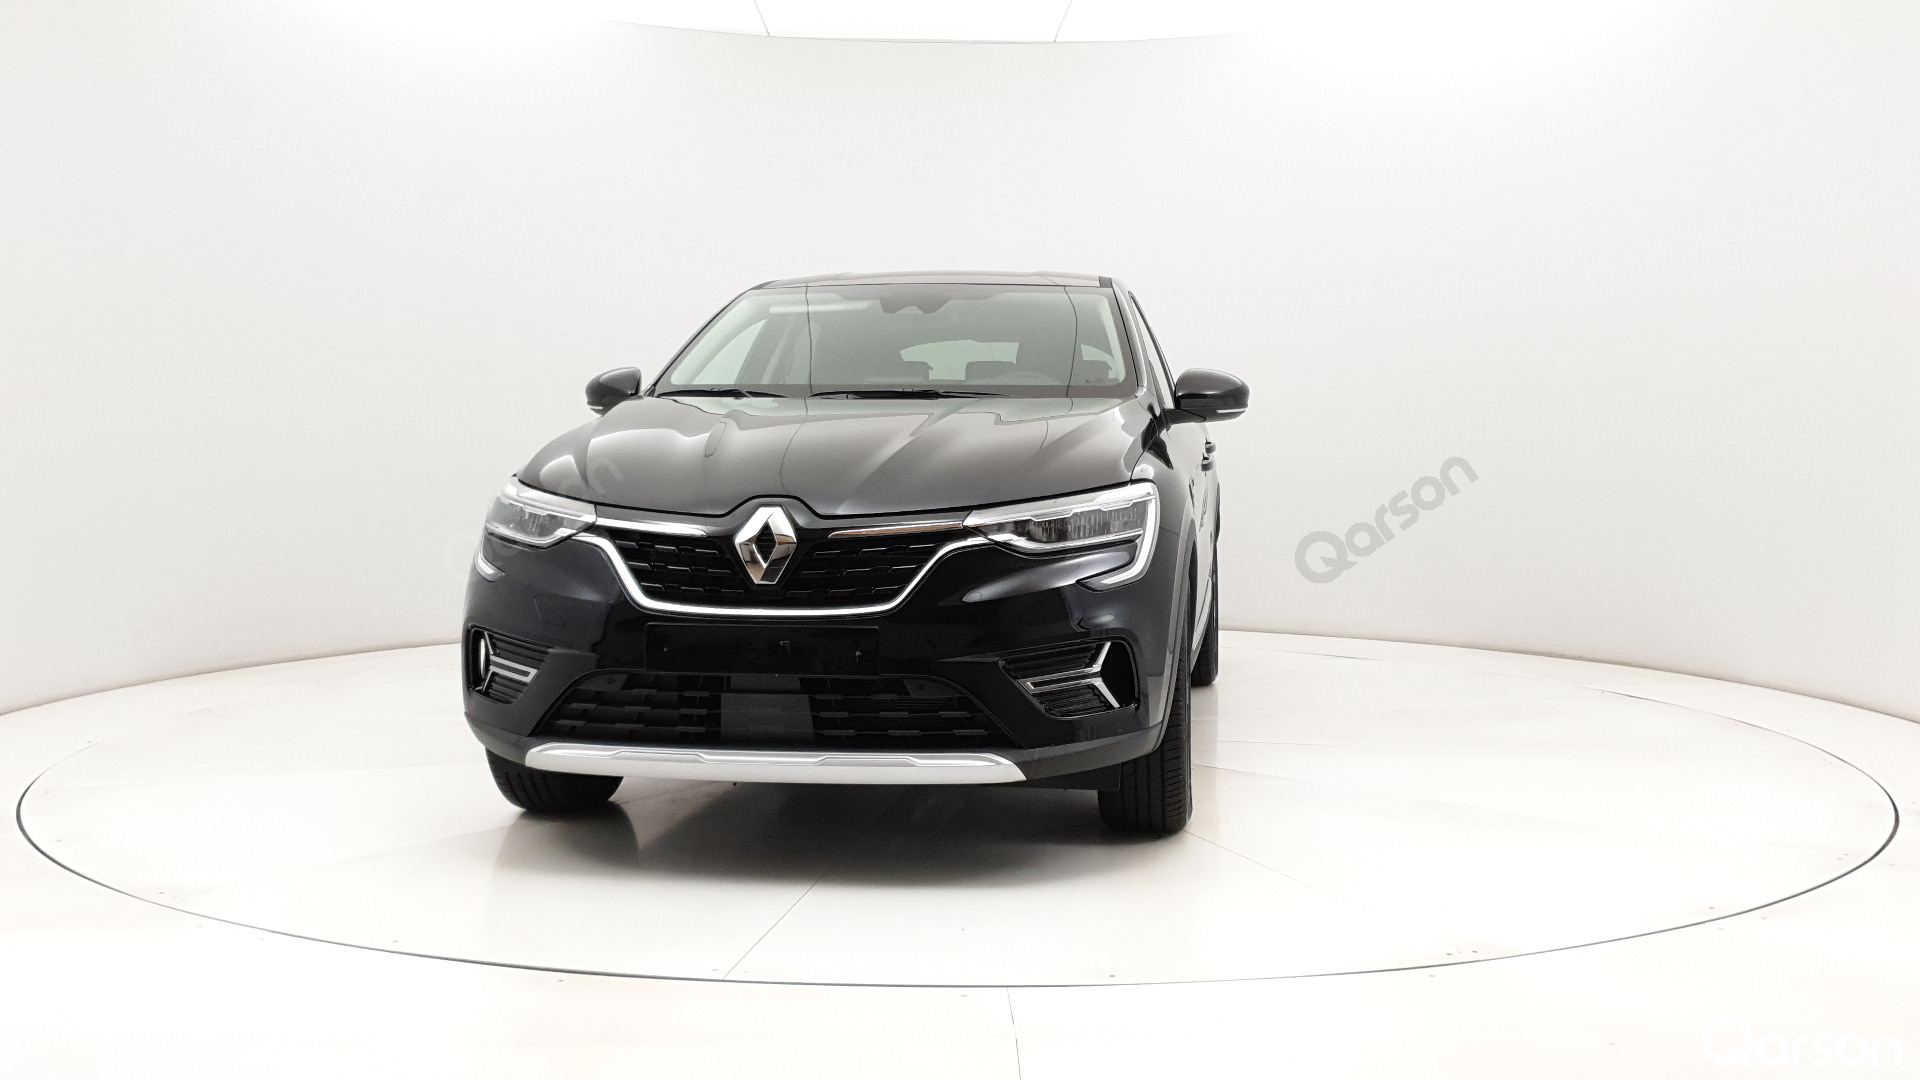 Renault Arkana Widok przodu samochodu lewy bok 10 stopni